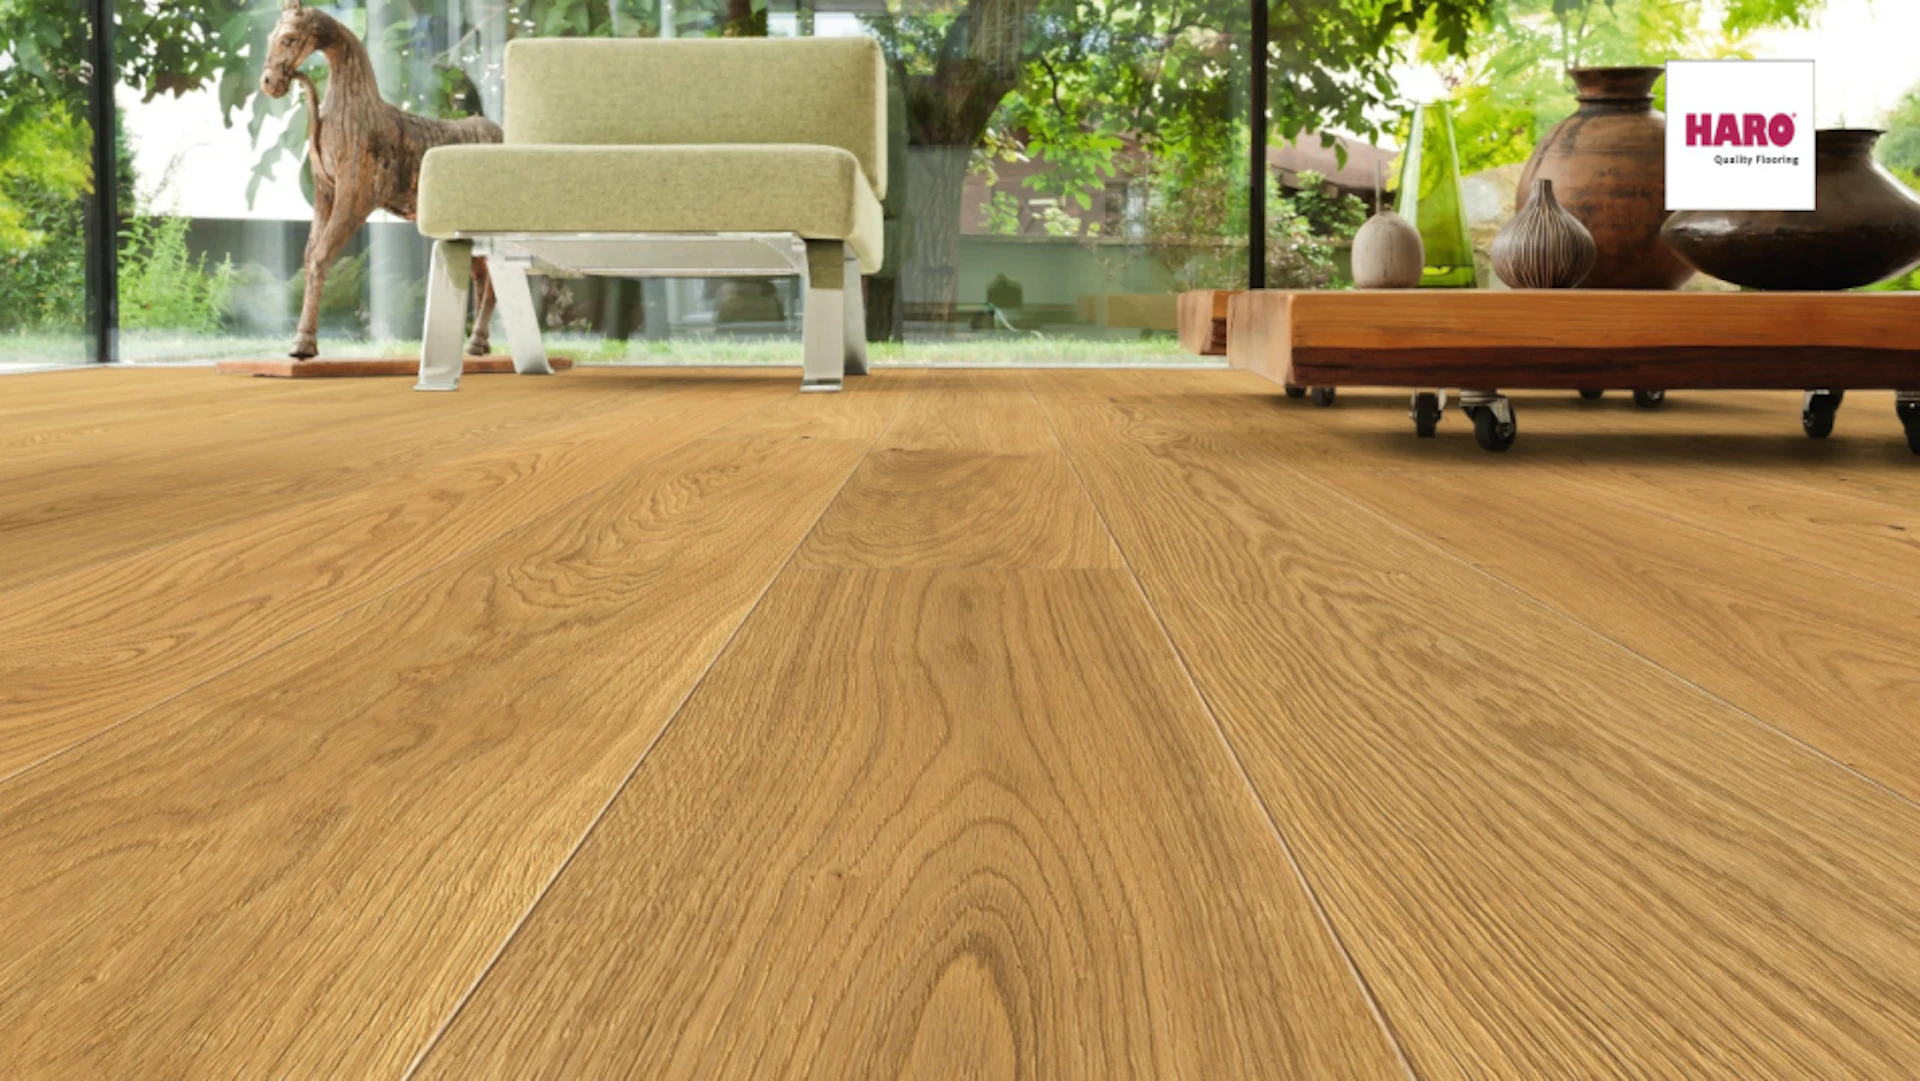 Haro Parquet Flooring - Series 4000 naturaLin plus Exclusive Oak (531677)